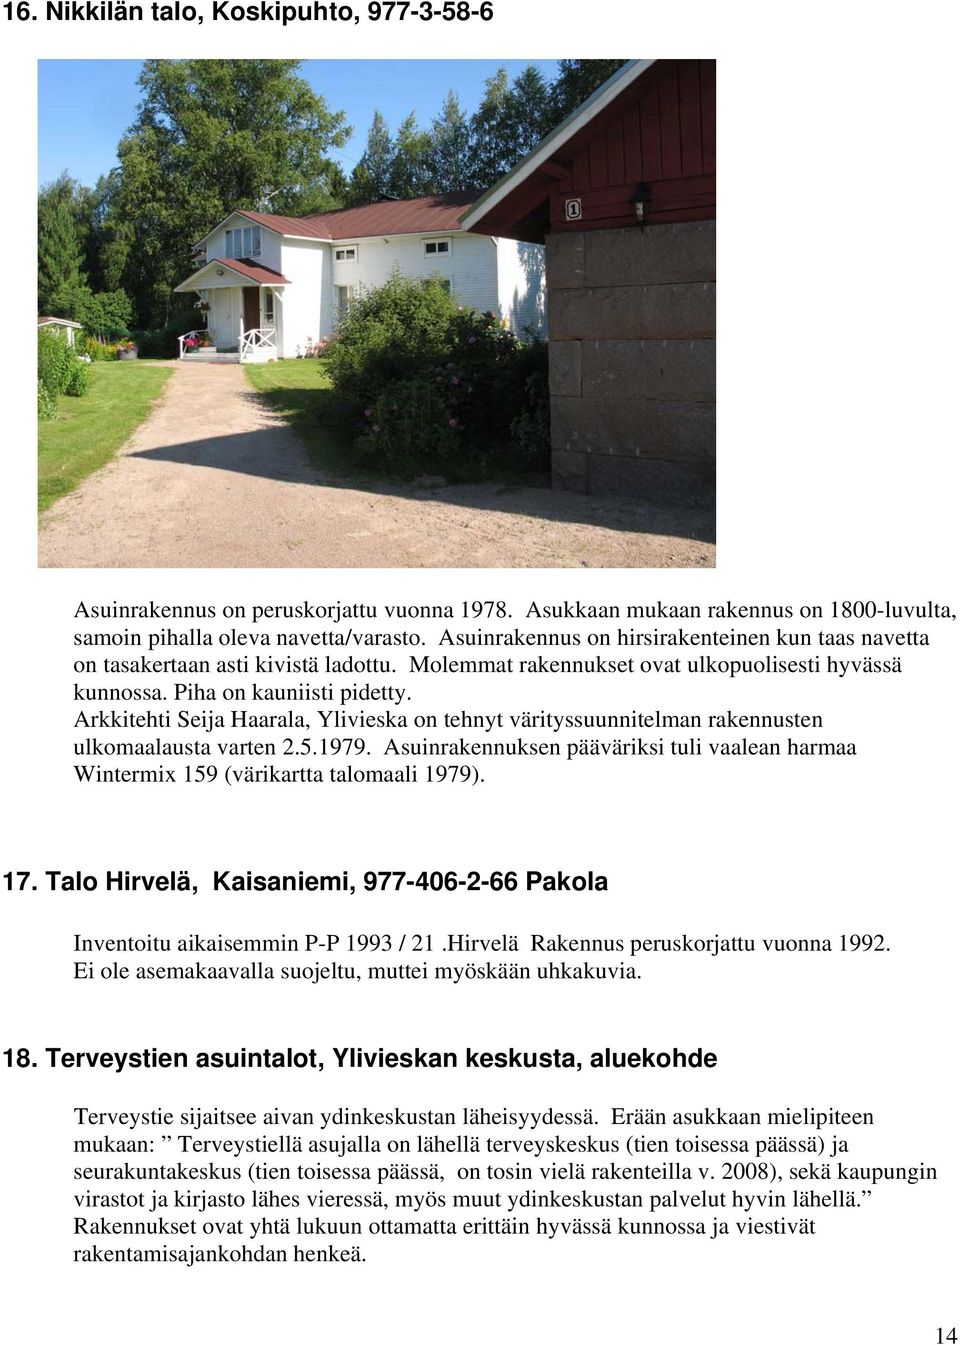 Arkkitehti Seija Haarala, Ylivieska on tehnyt värityssuunnitelman rakennusten ulkomaalausta varten 2.5.1979. Asuinrakennuksen pääväriksi tuli vaalean harmaa Wintermix 159 (värikartta talomaali 1979).